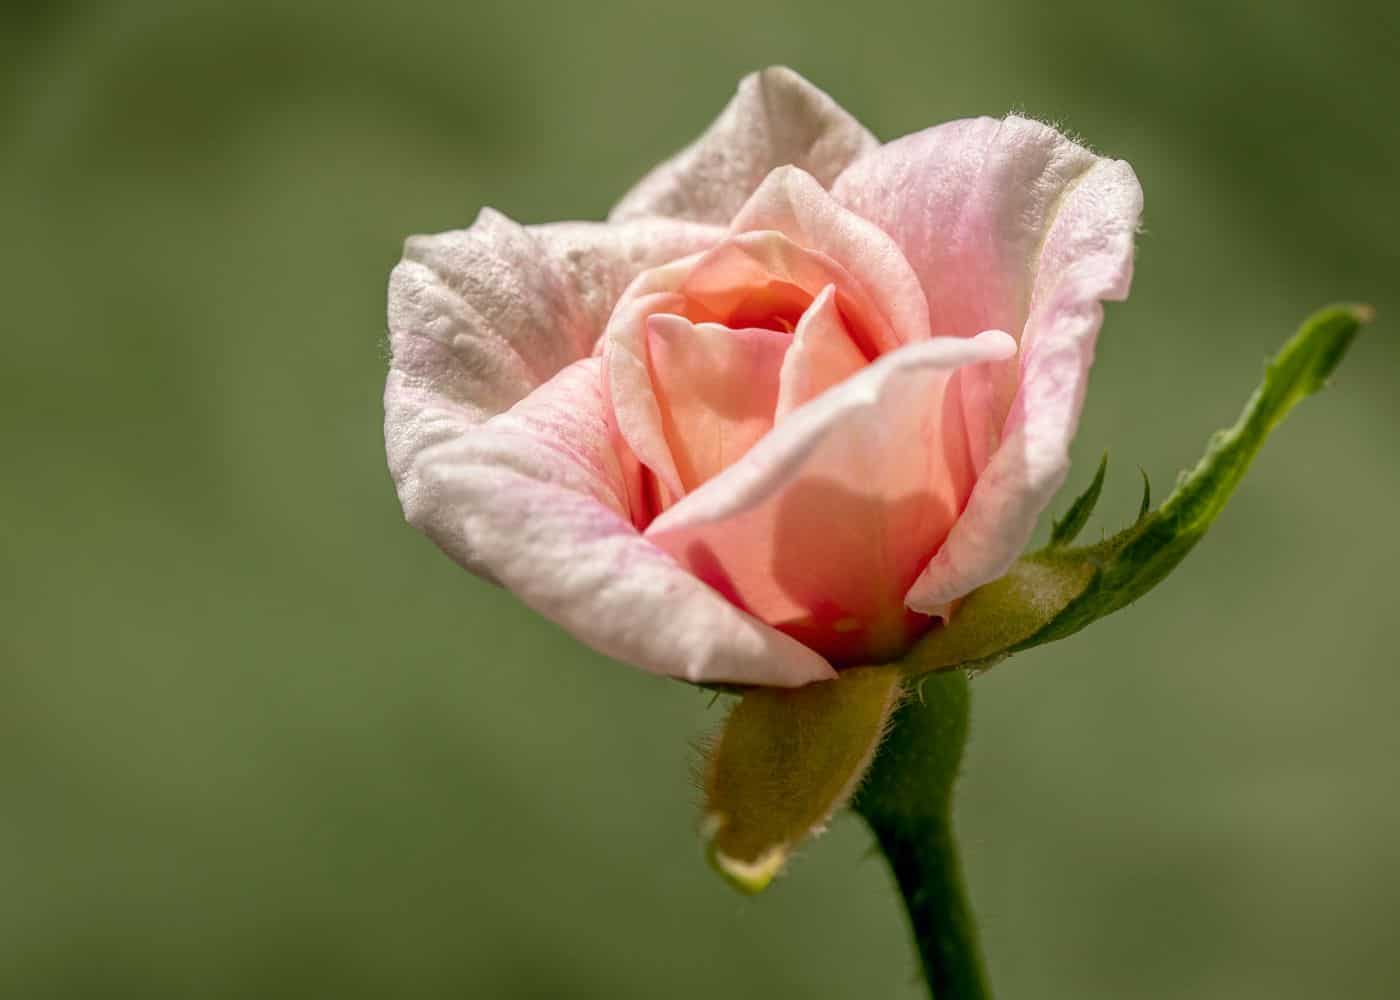 Mlle cécile brünner rose